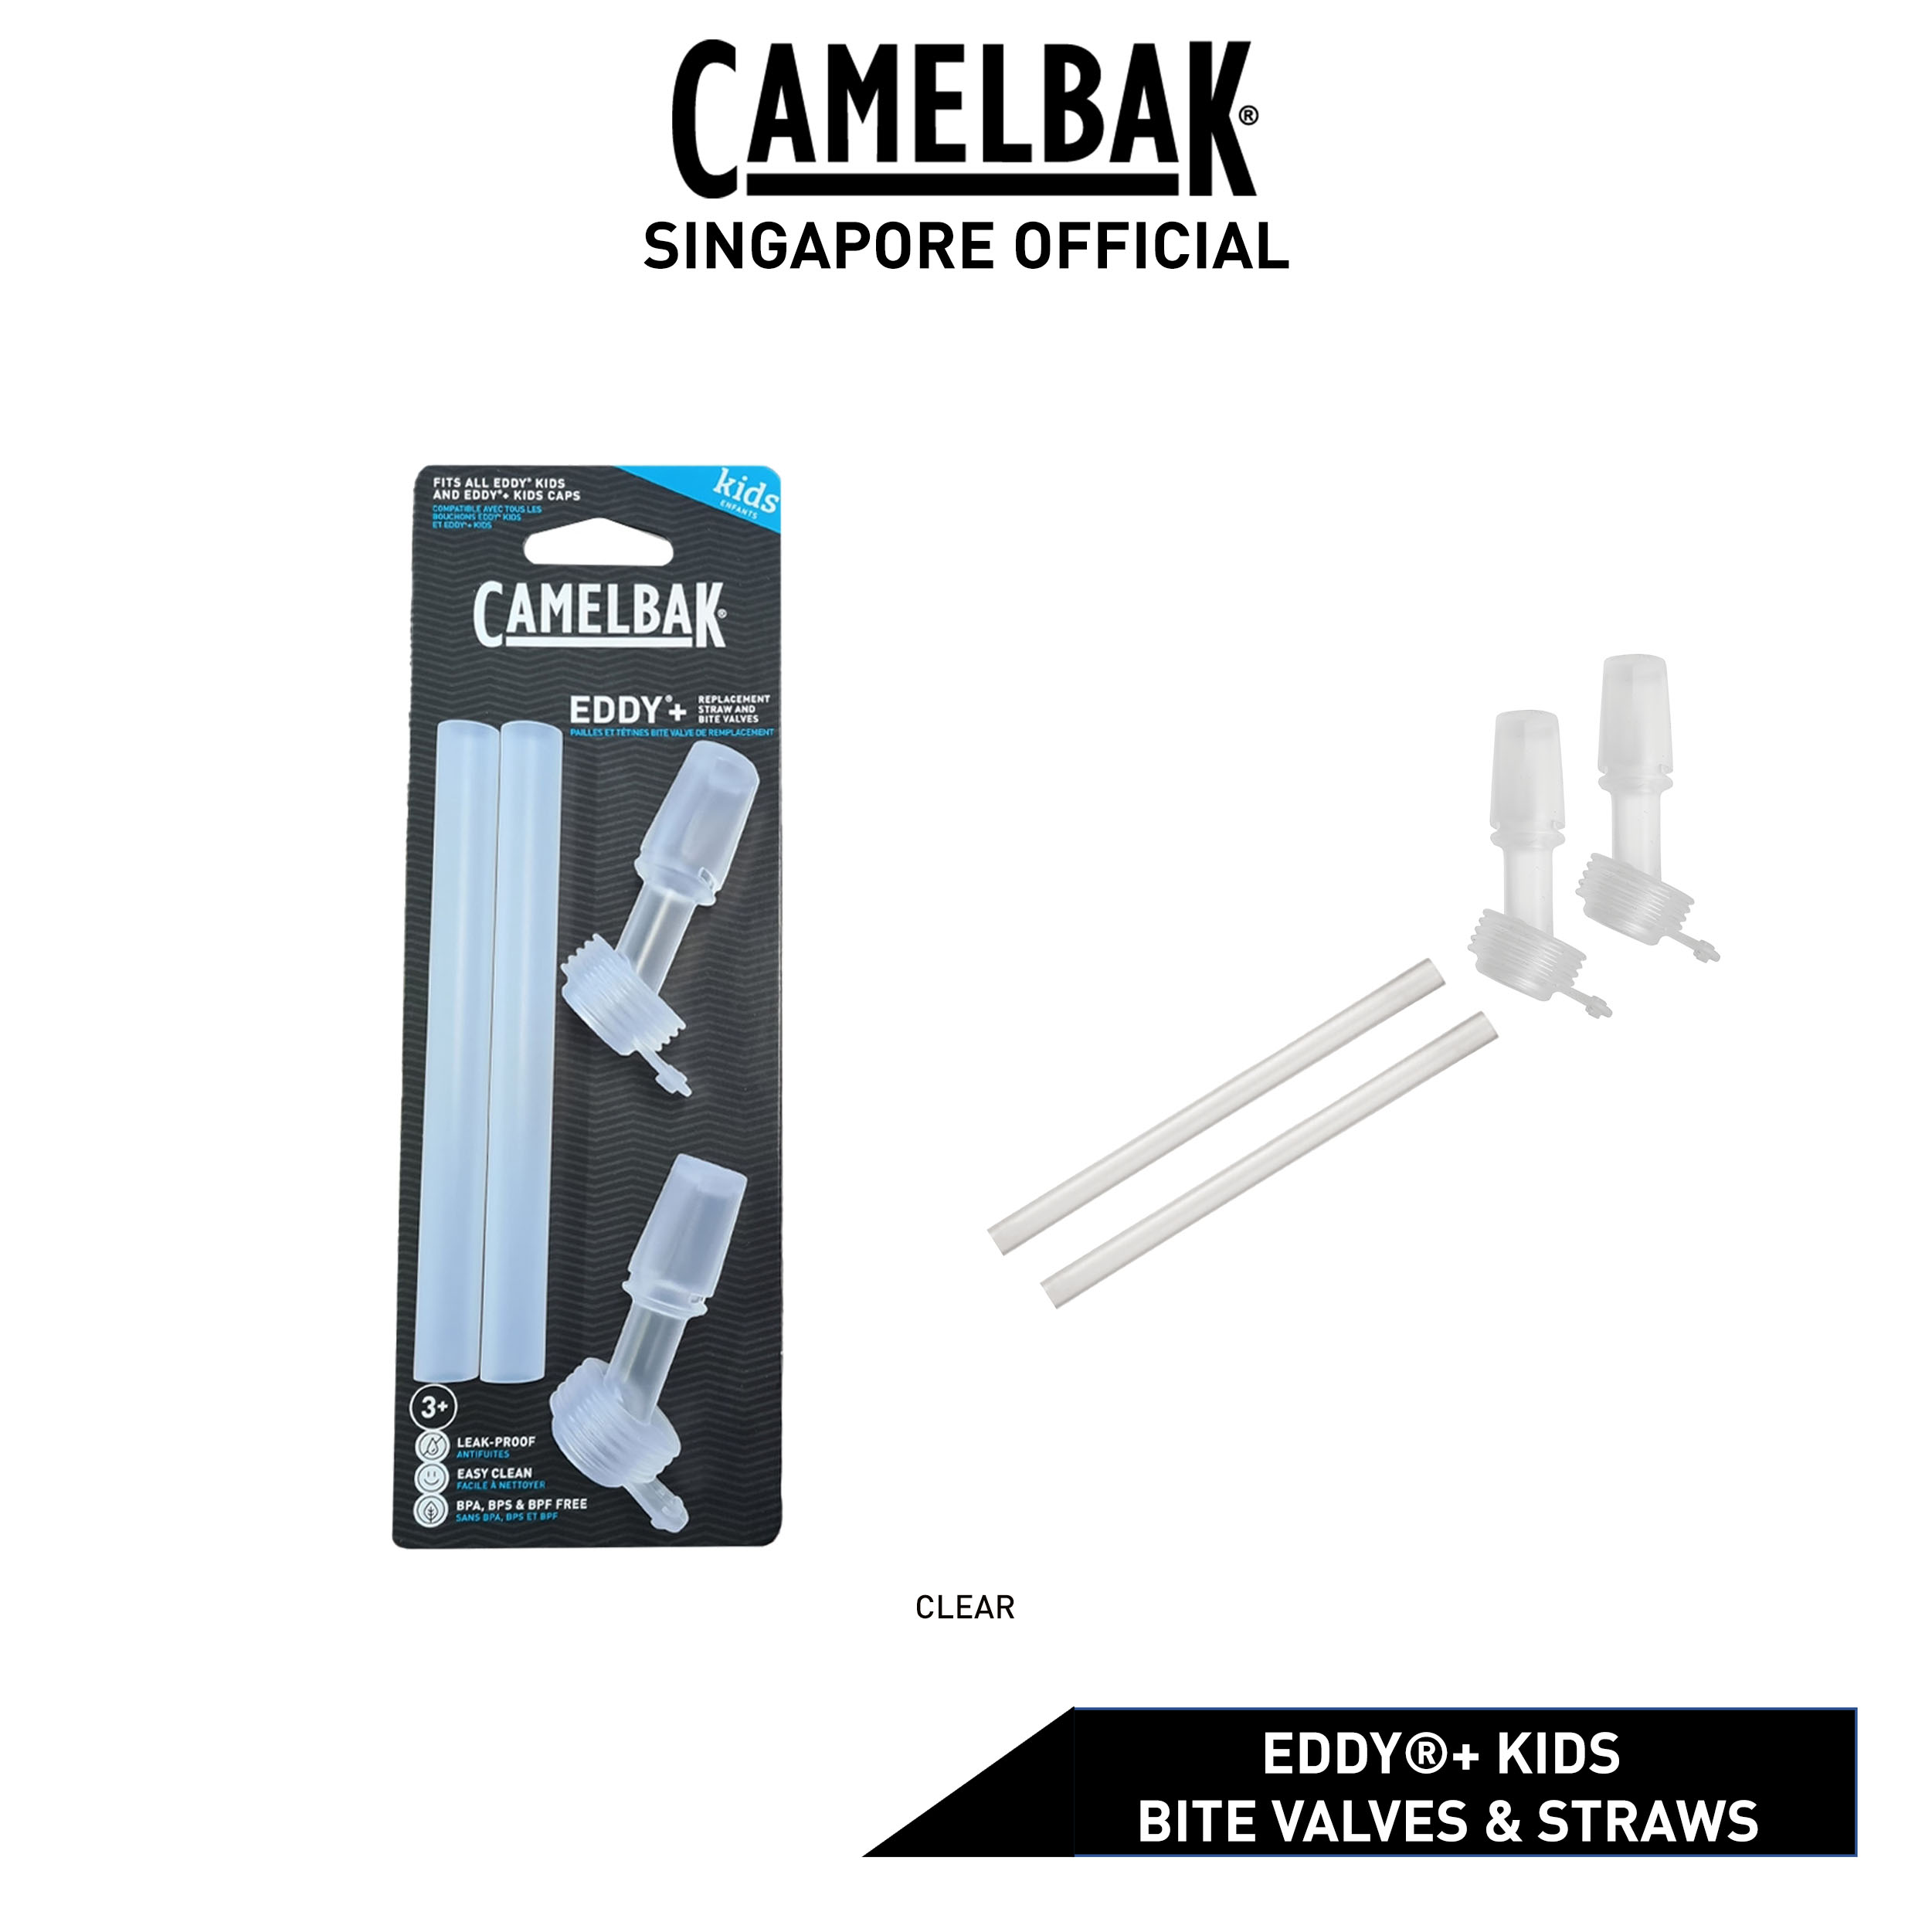 For Kids] CamelBak Eddy+ Kids Bite Valves & Straws Accessory Clear